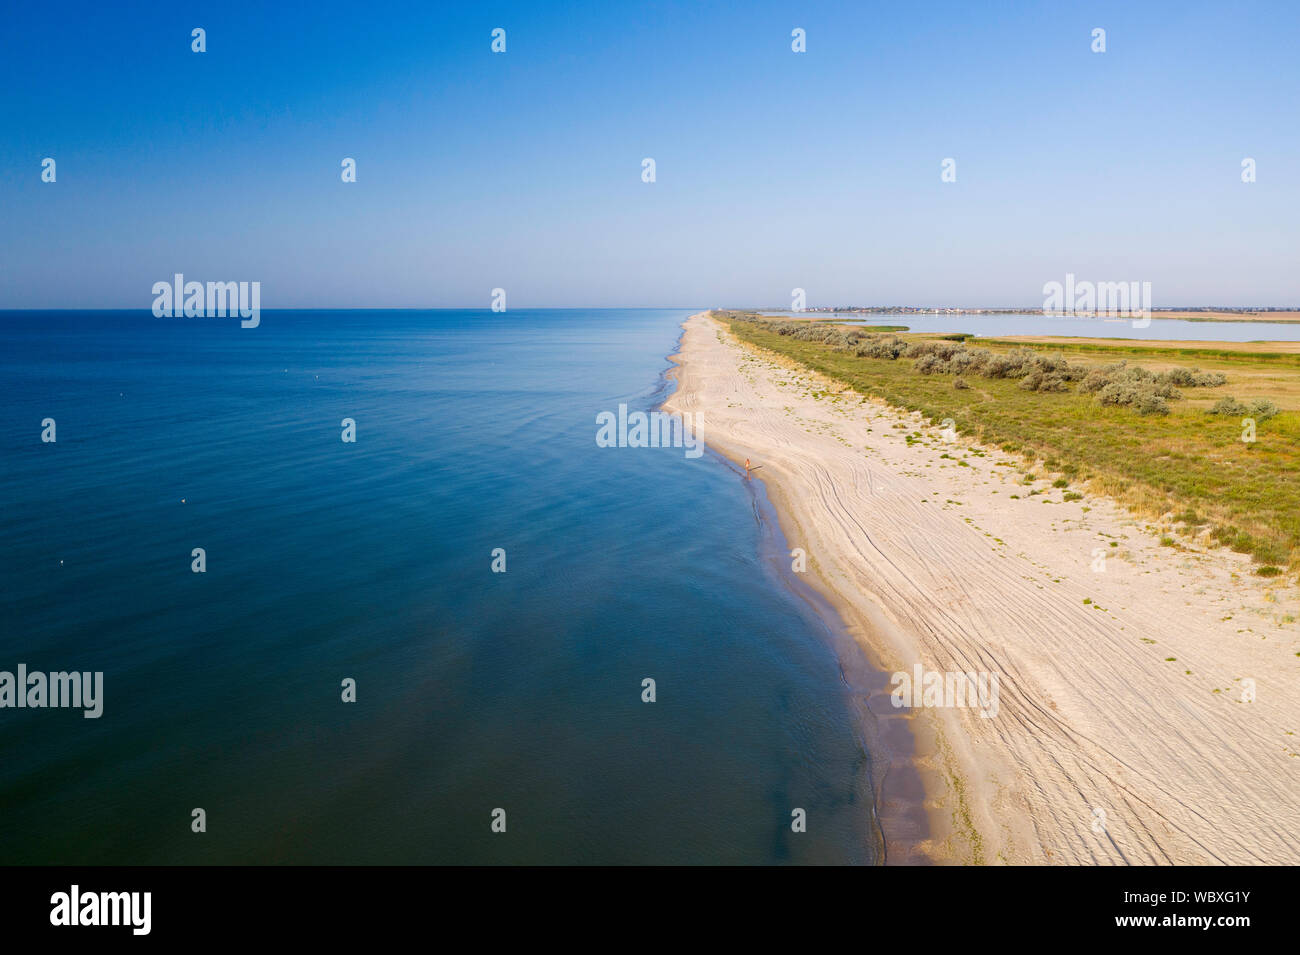 Una spiaggia sul Mar Nero a riva in una giornata di sole, chiudere la vista delle onde del mare Foto Stock